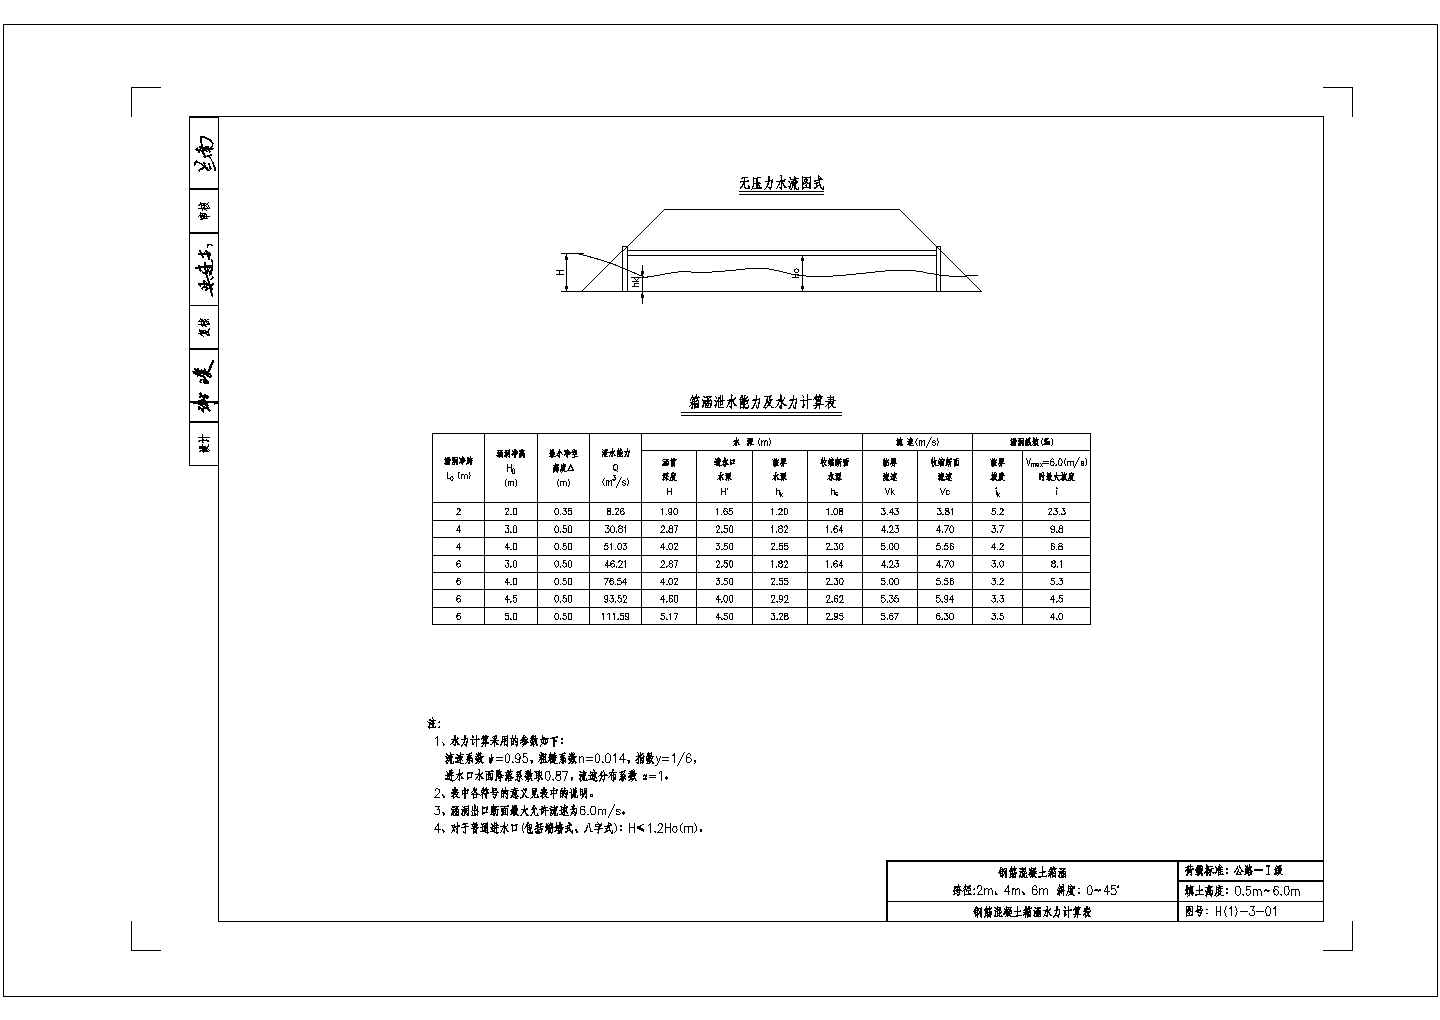 涵洞设计参考图 钢筋混凝土箱涵 第三册（CAD版）